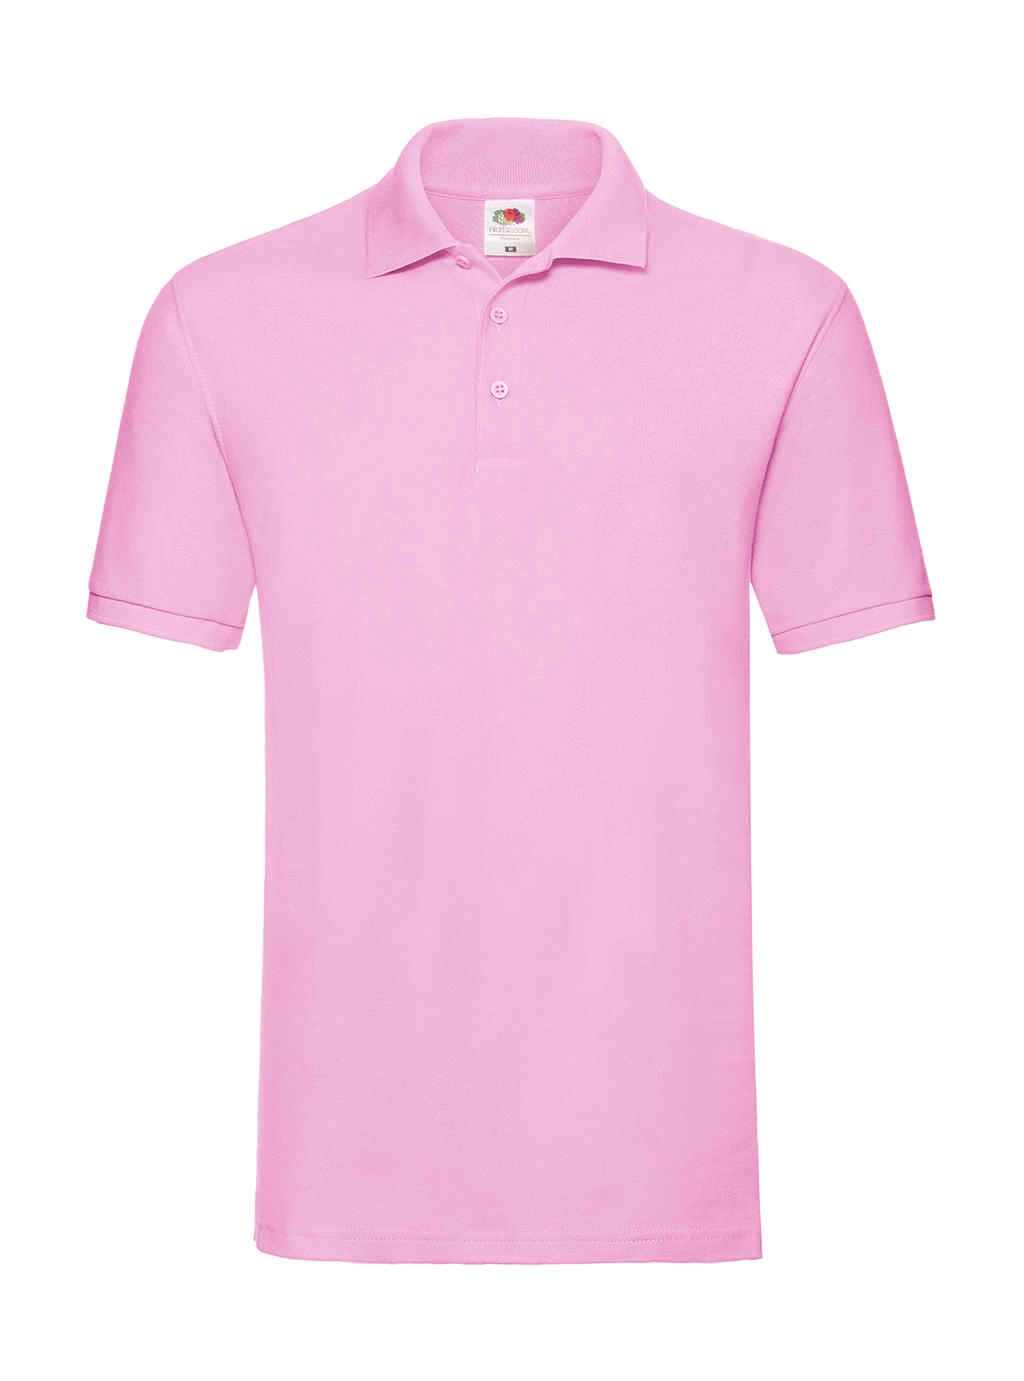 Premium Polo zum Besticken und Bedrucken in der Farbe Light Pink mit Ihren Logo, Schriftzug oder Motiv.